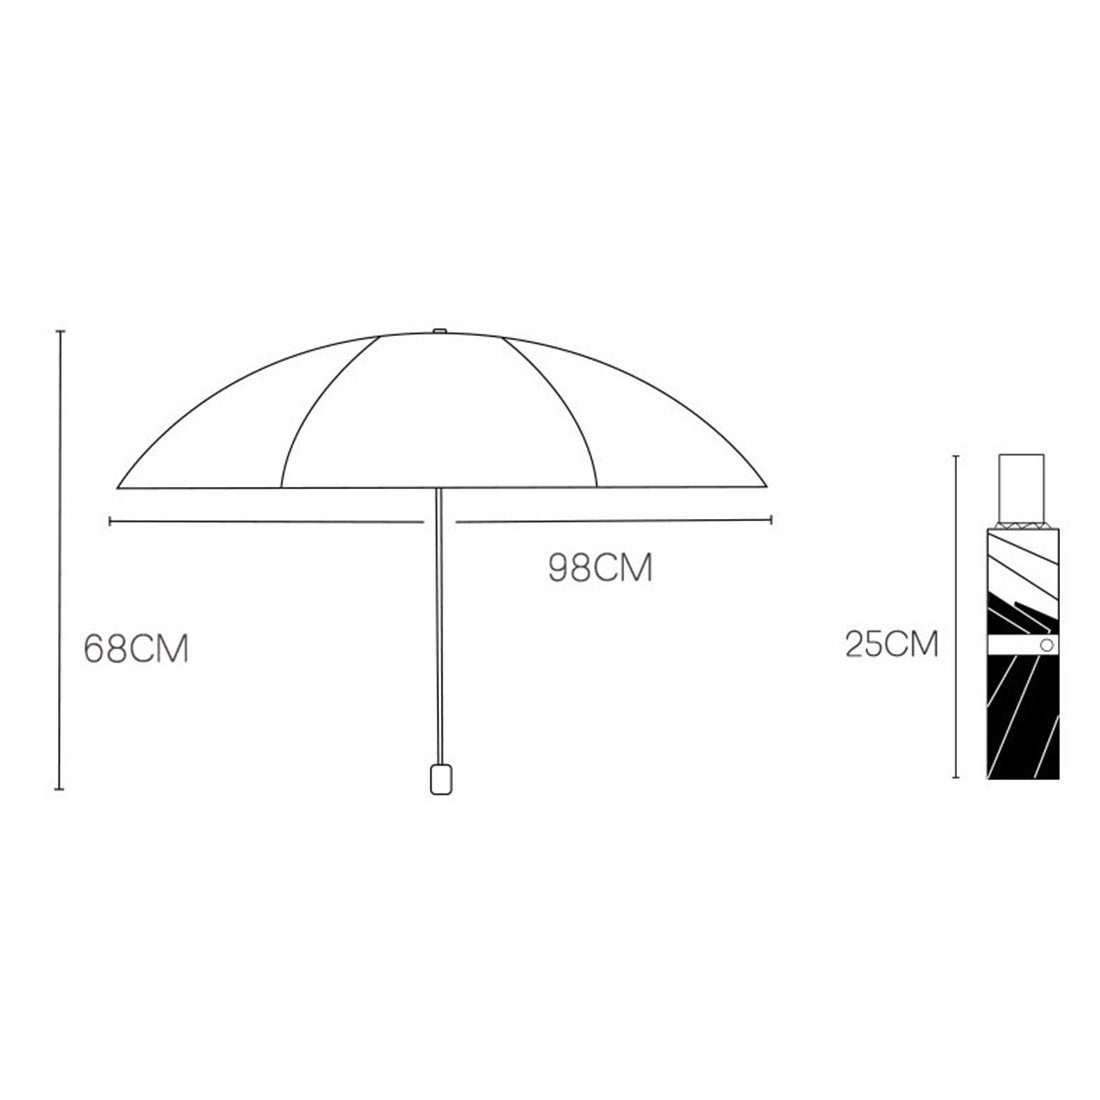 vor Mini Grau Taschenregenschirm und Sonnenschutz YOOdy~ Regenschirm Sonne Taschenschirme Regen